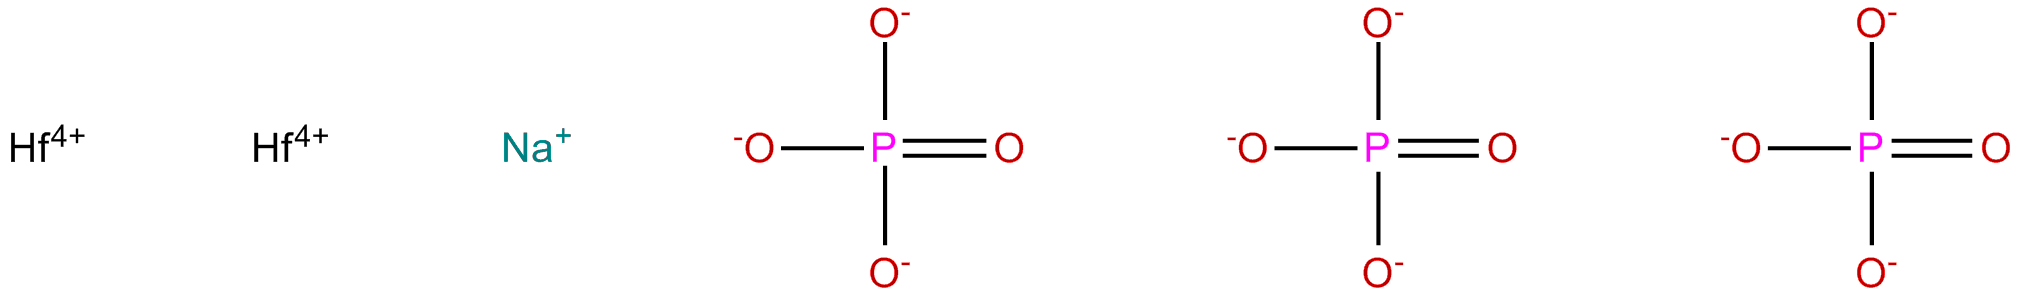 Image of sodium dihafnium triphosphate